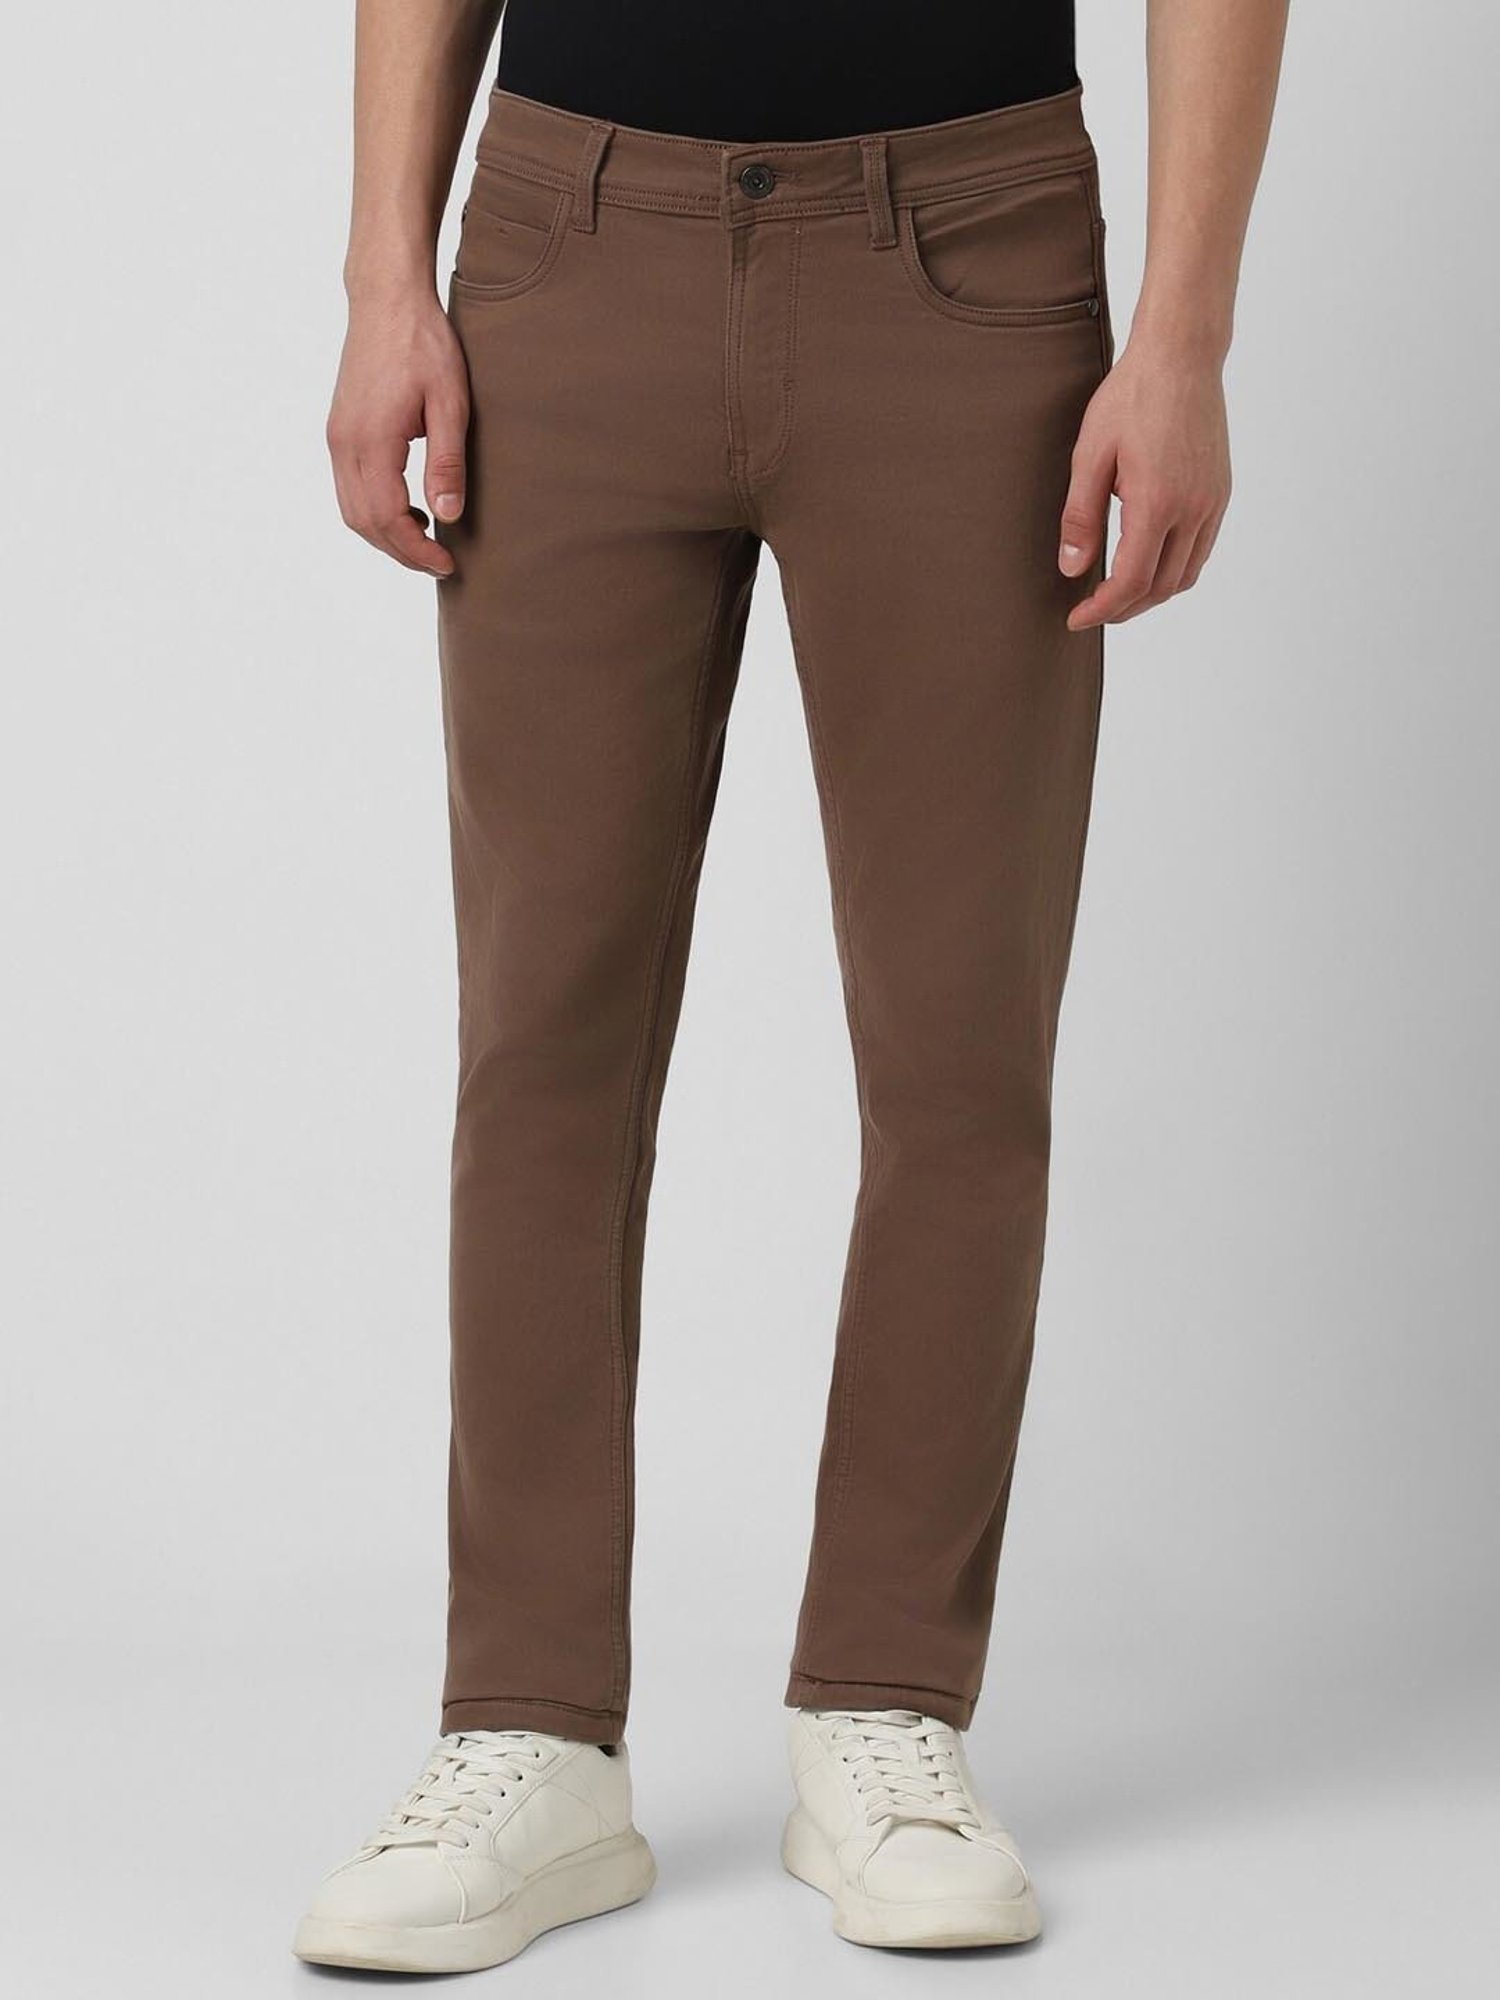 Brown Men's Dress Pants | Dillard's